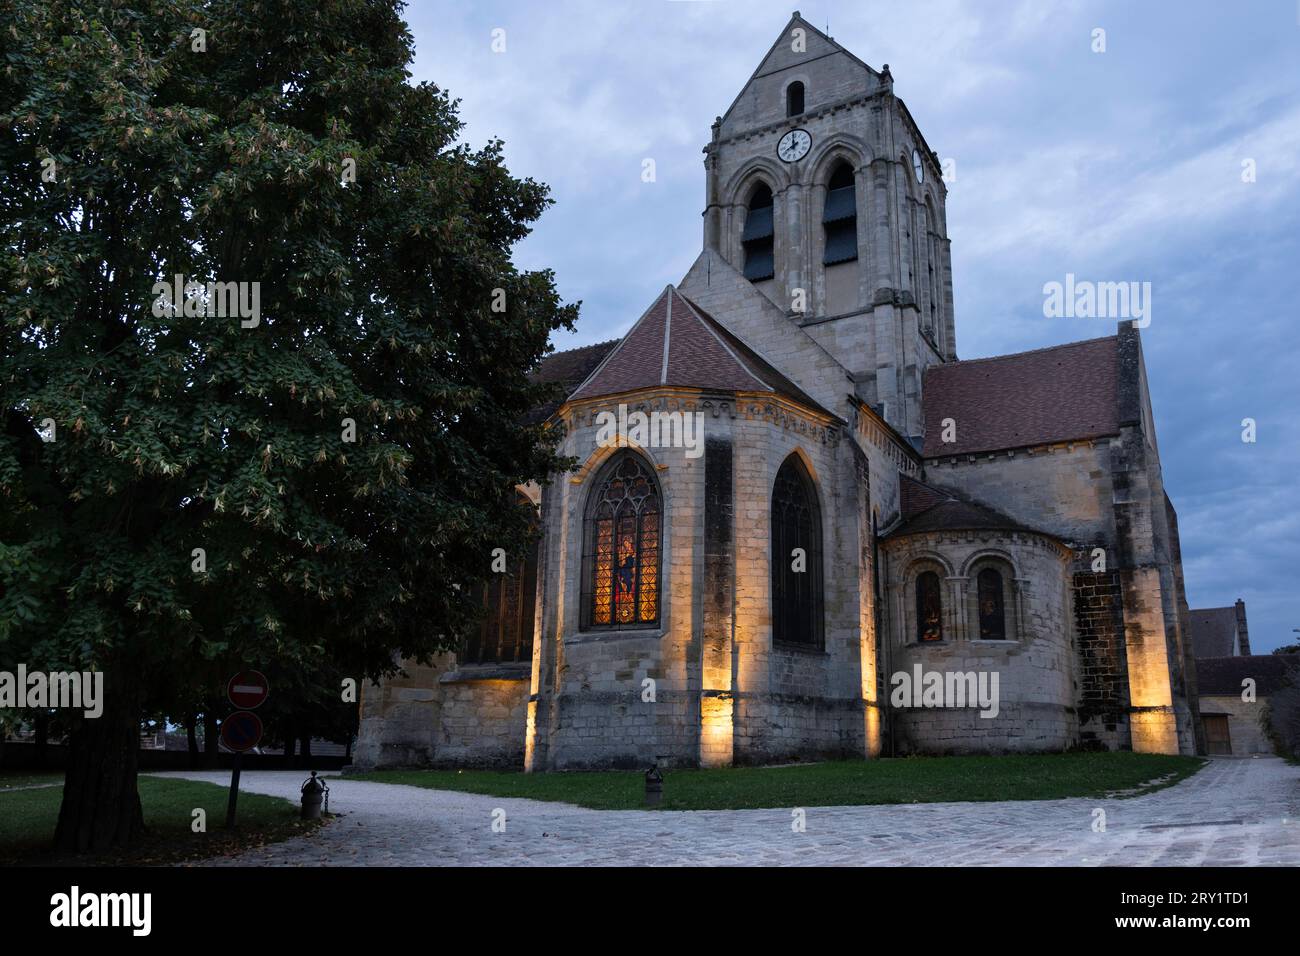 Église notre-Dame-de-l'Assomption, église paroissiale catholique à Auvers sur Oise. L'église, peinte par Vincent van Gogh. Coucher de soleil, ciel bleu Banque D'Images